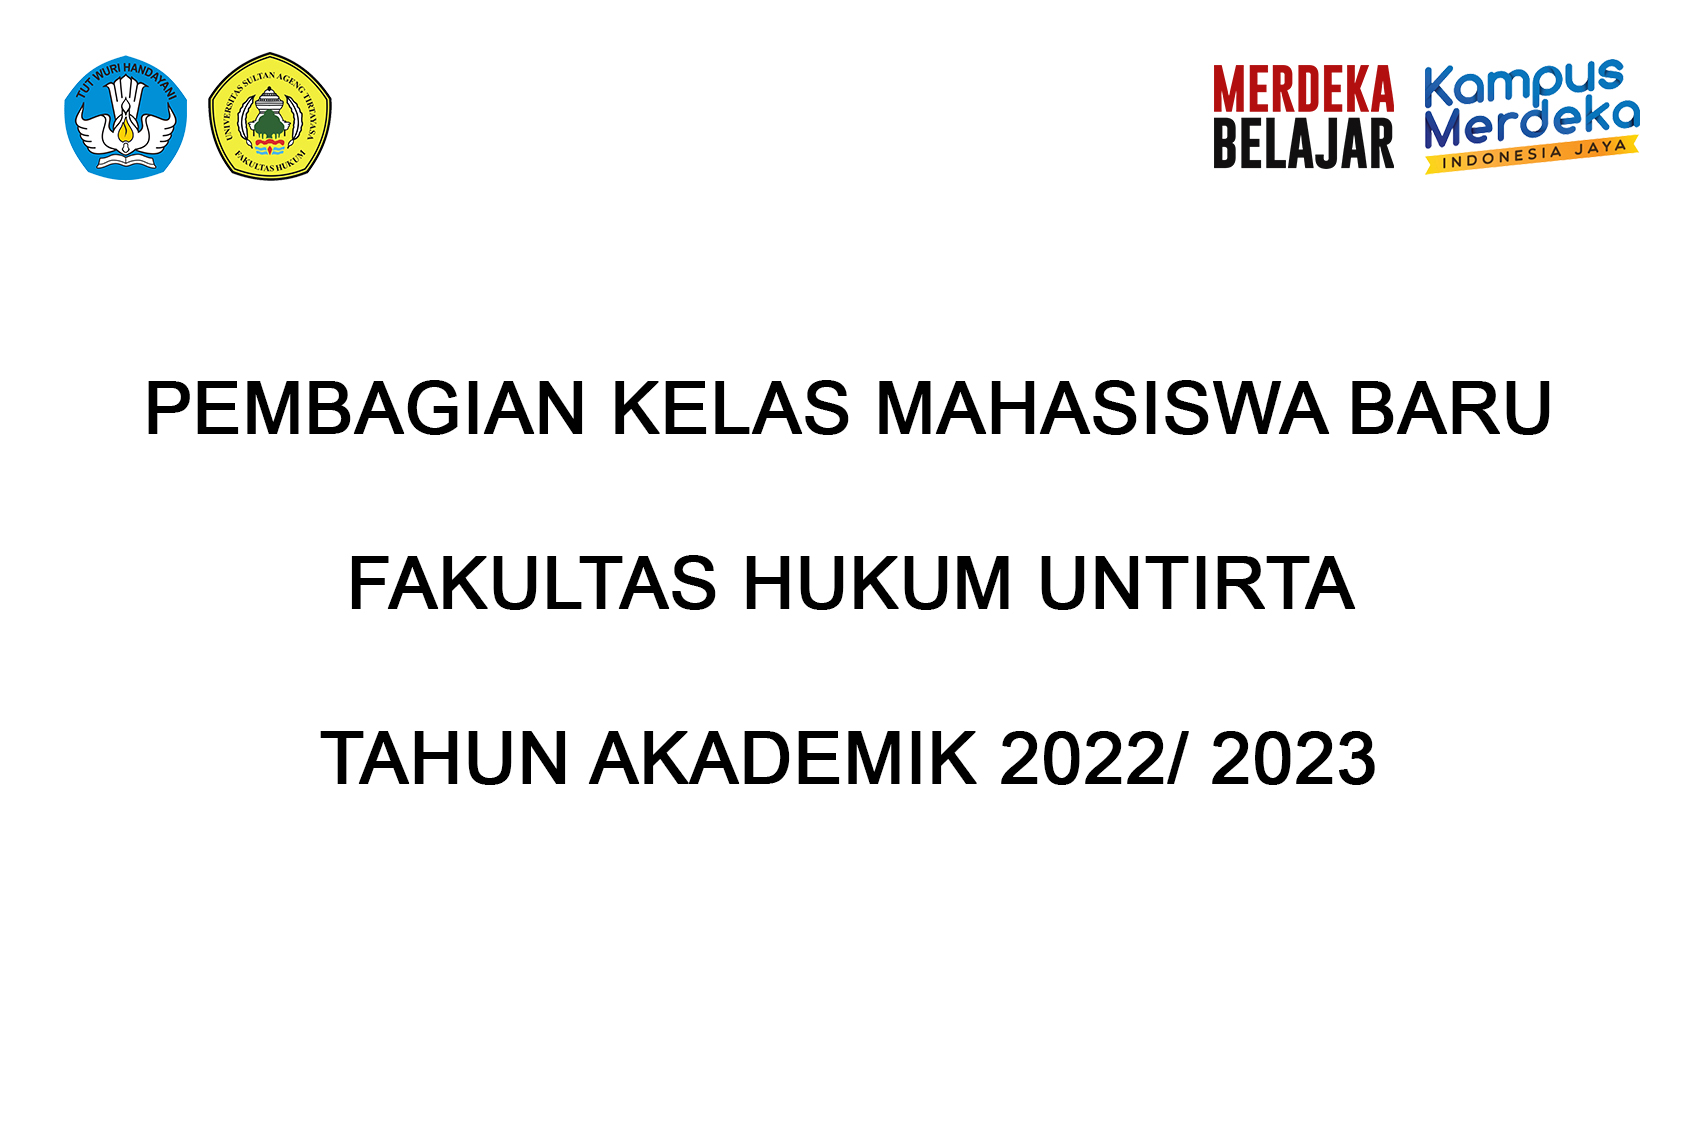 Pembagian Kelas Mahasiswa Baru Fakultas Hukum Tahun Akademik 2022-2023